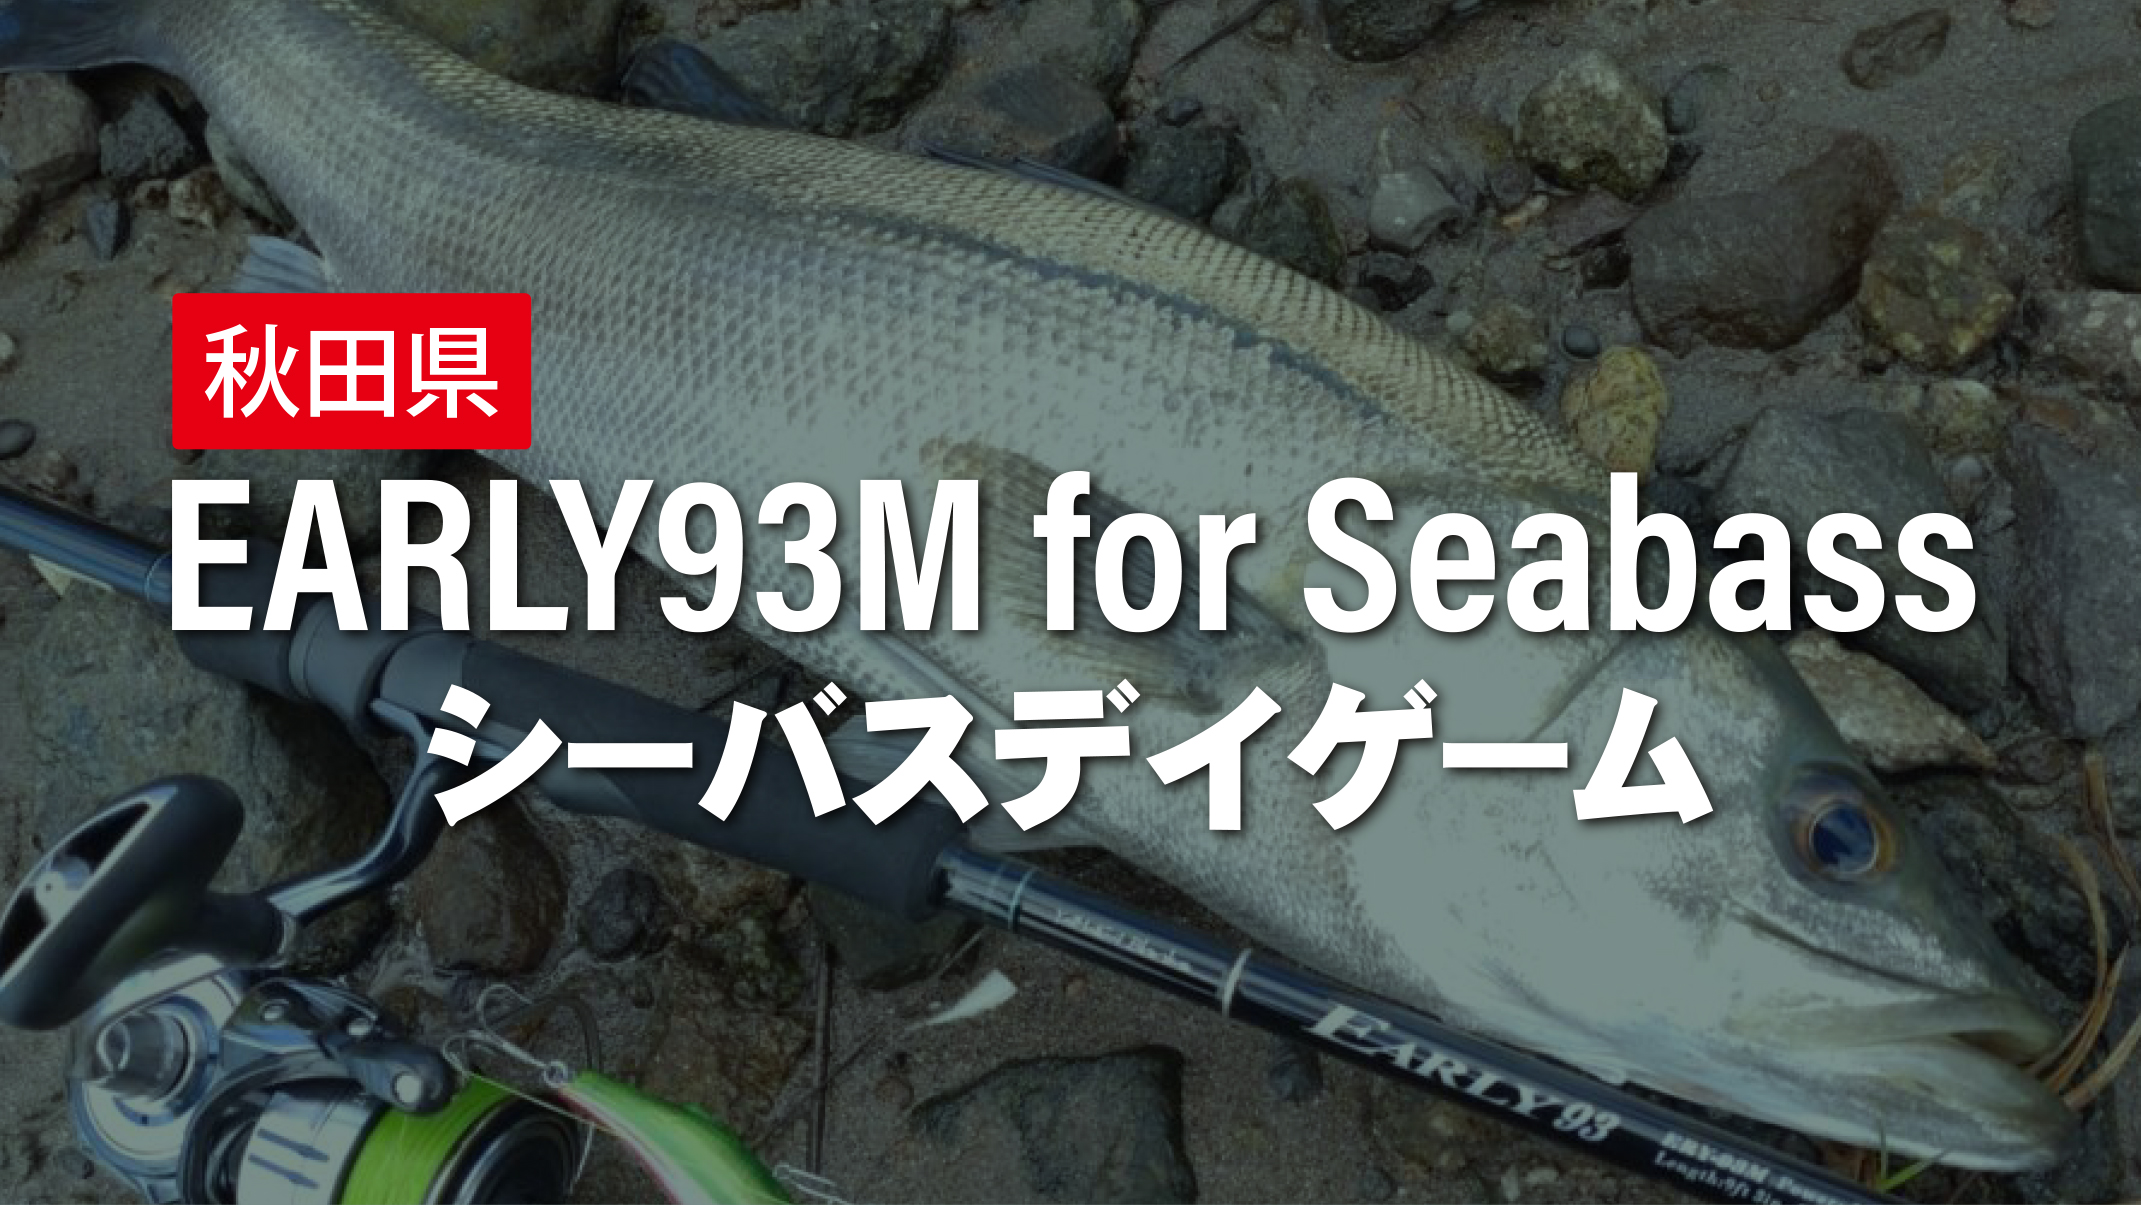 【フィールドスタッフレポート】秋田県シーバスデイゲーム EARLY93M for Seabass